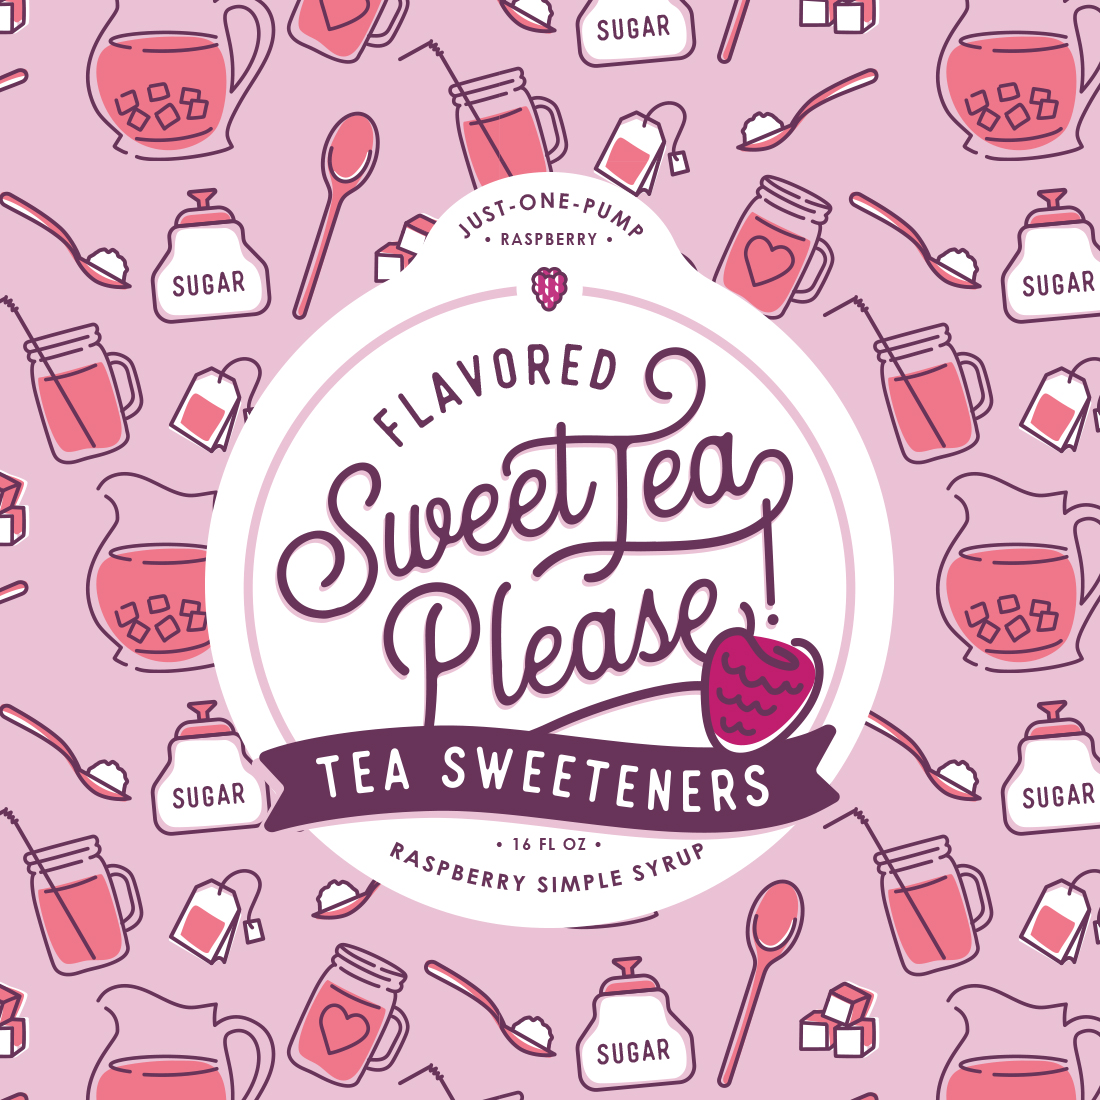 Sweet Tea Sweetener Package Design